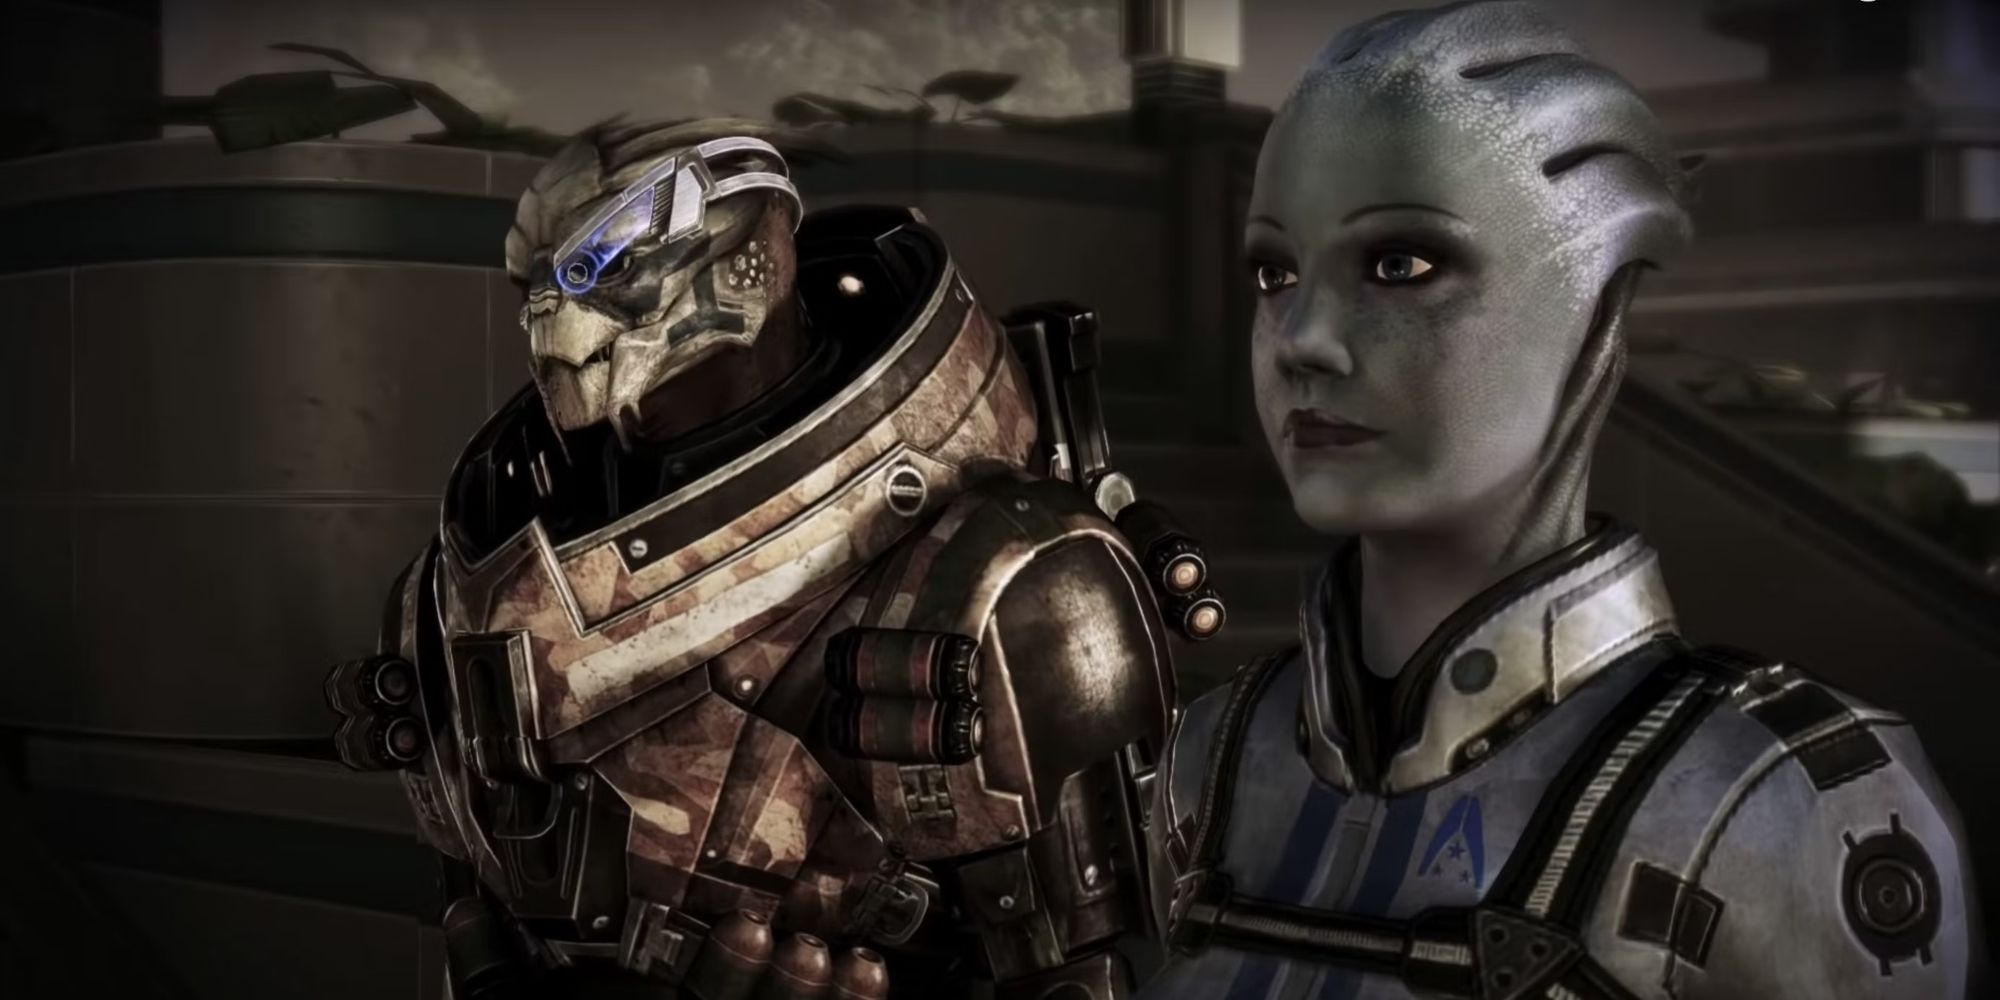 Mass Effect Garrus and Liara beside each other